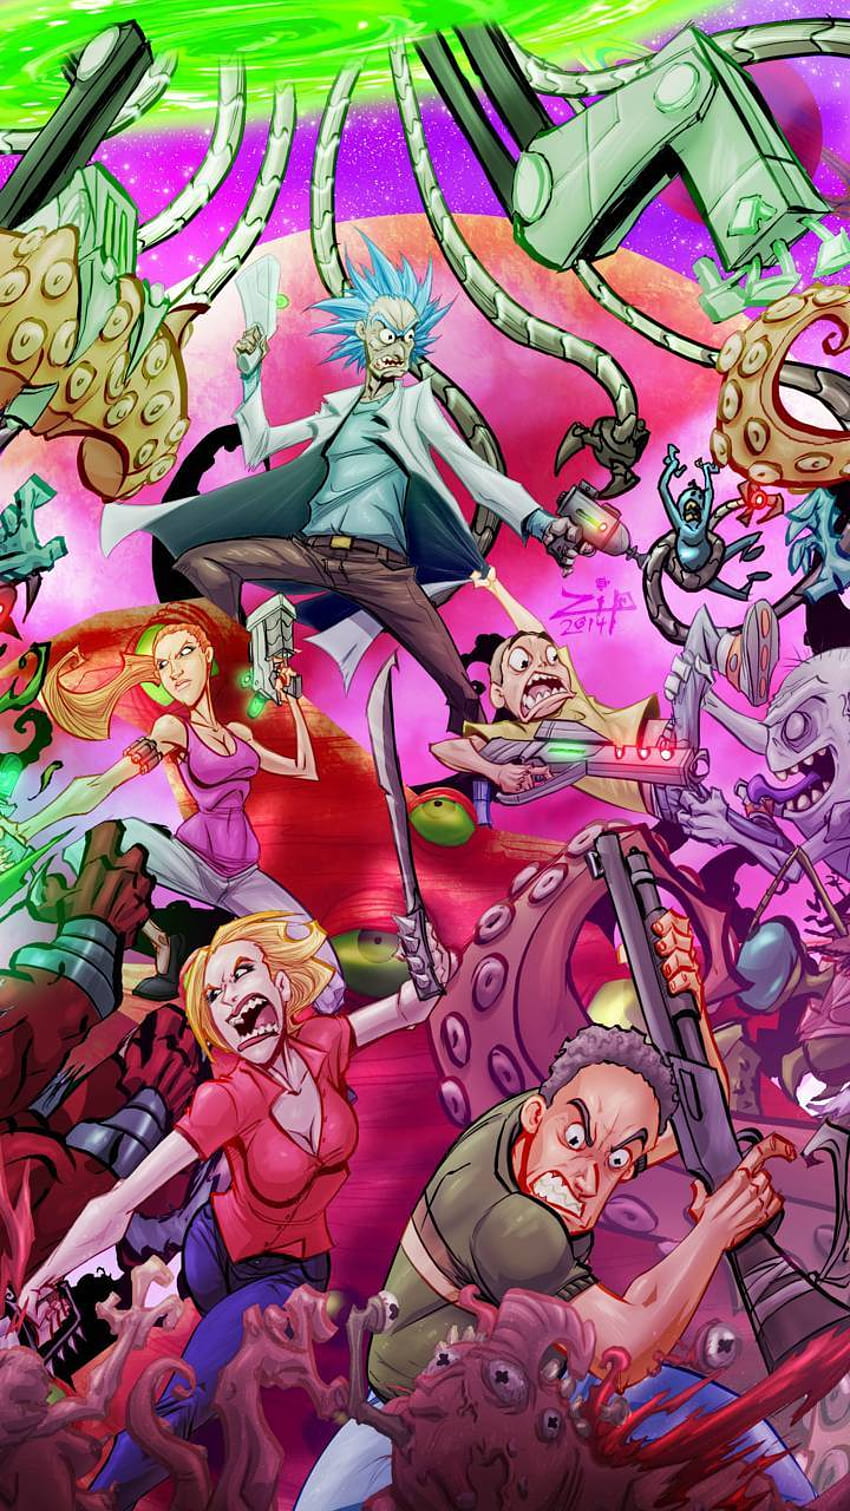 HD Rick Sanchez Wallpaper - Vibrant Rick and Morty Art by patrika